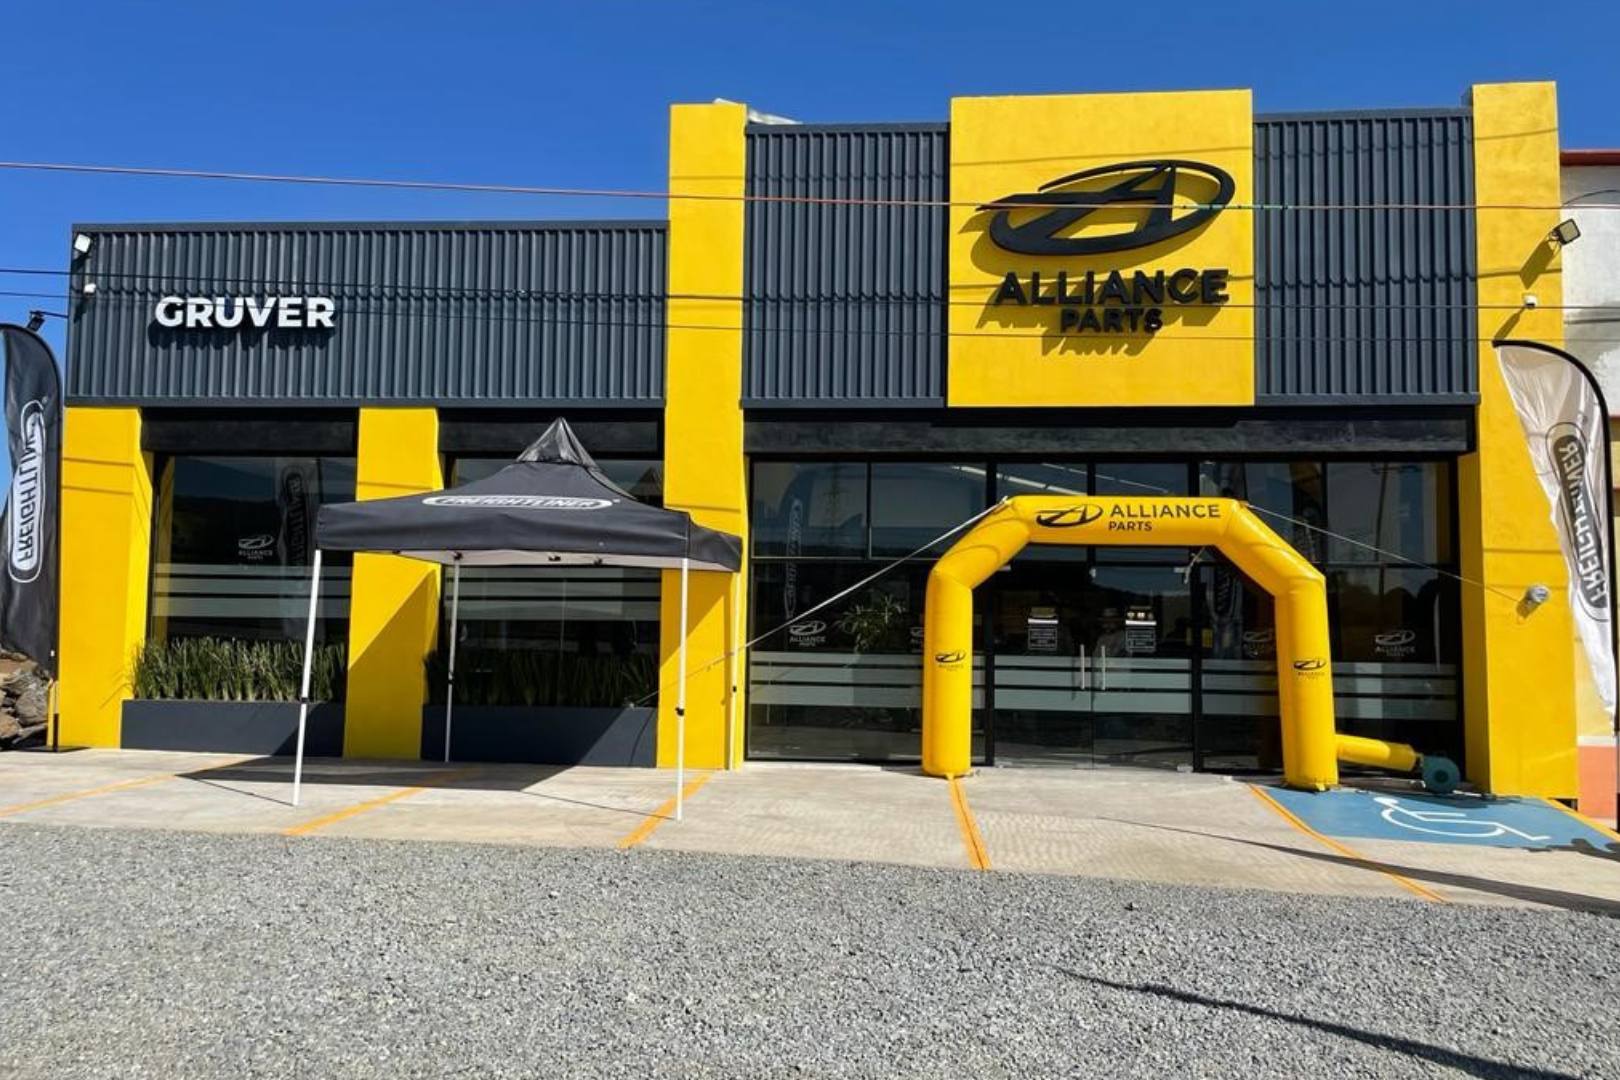 DTNA y GRUVER inauguran tienda Alliance Parts en Hidalgo